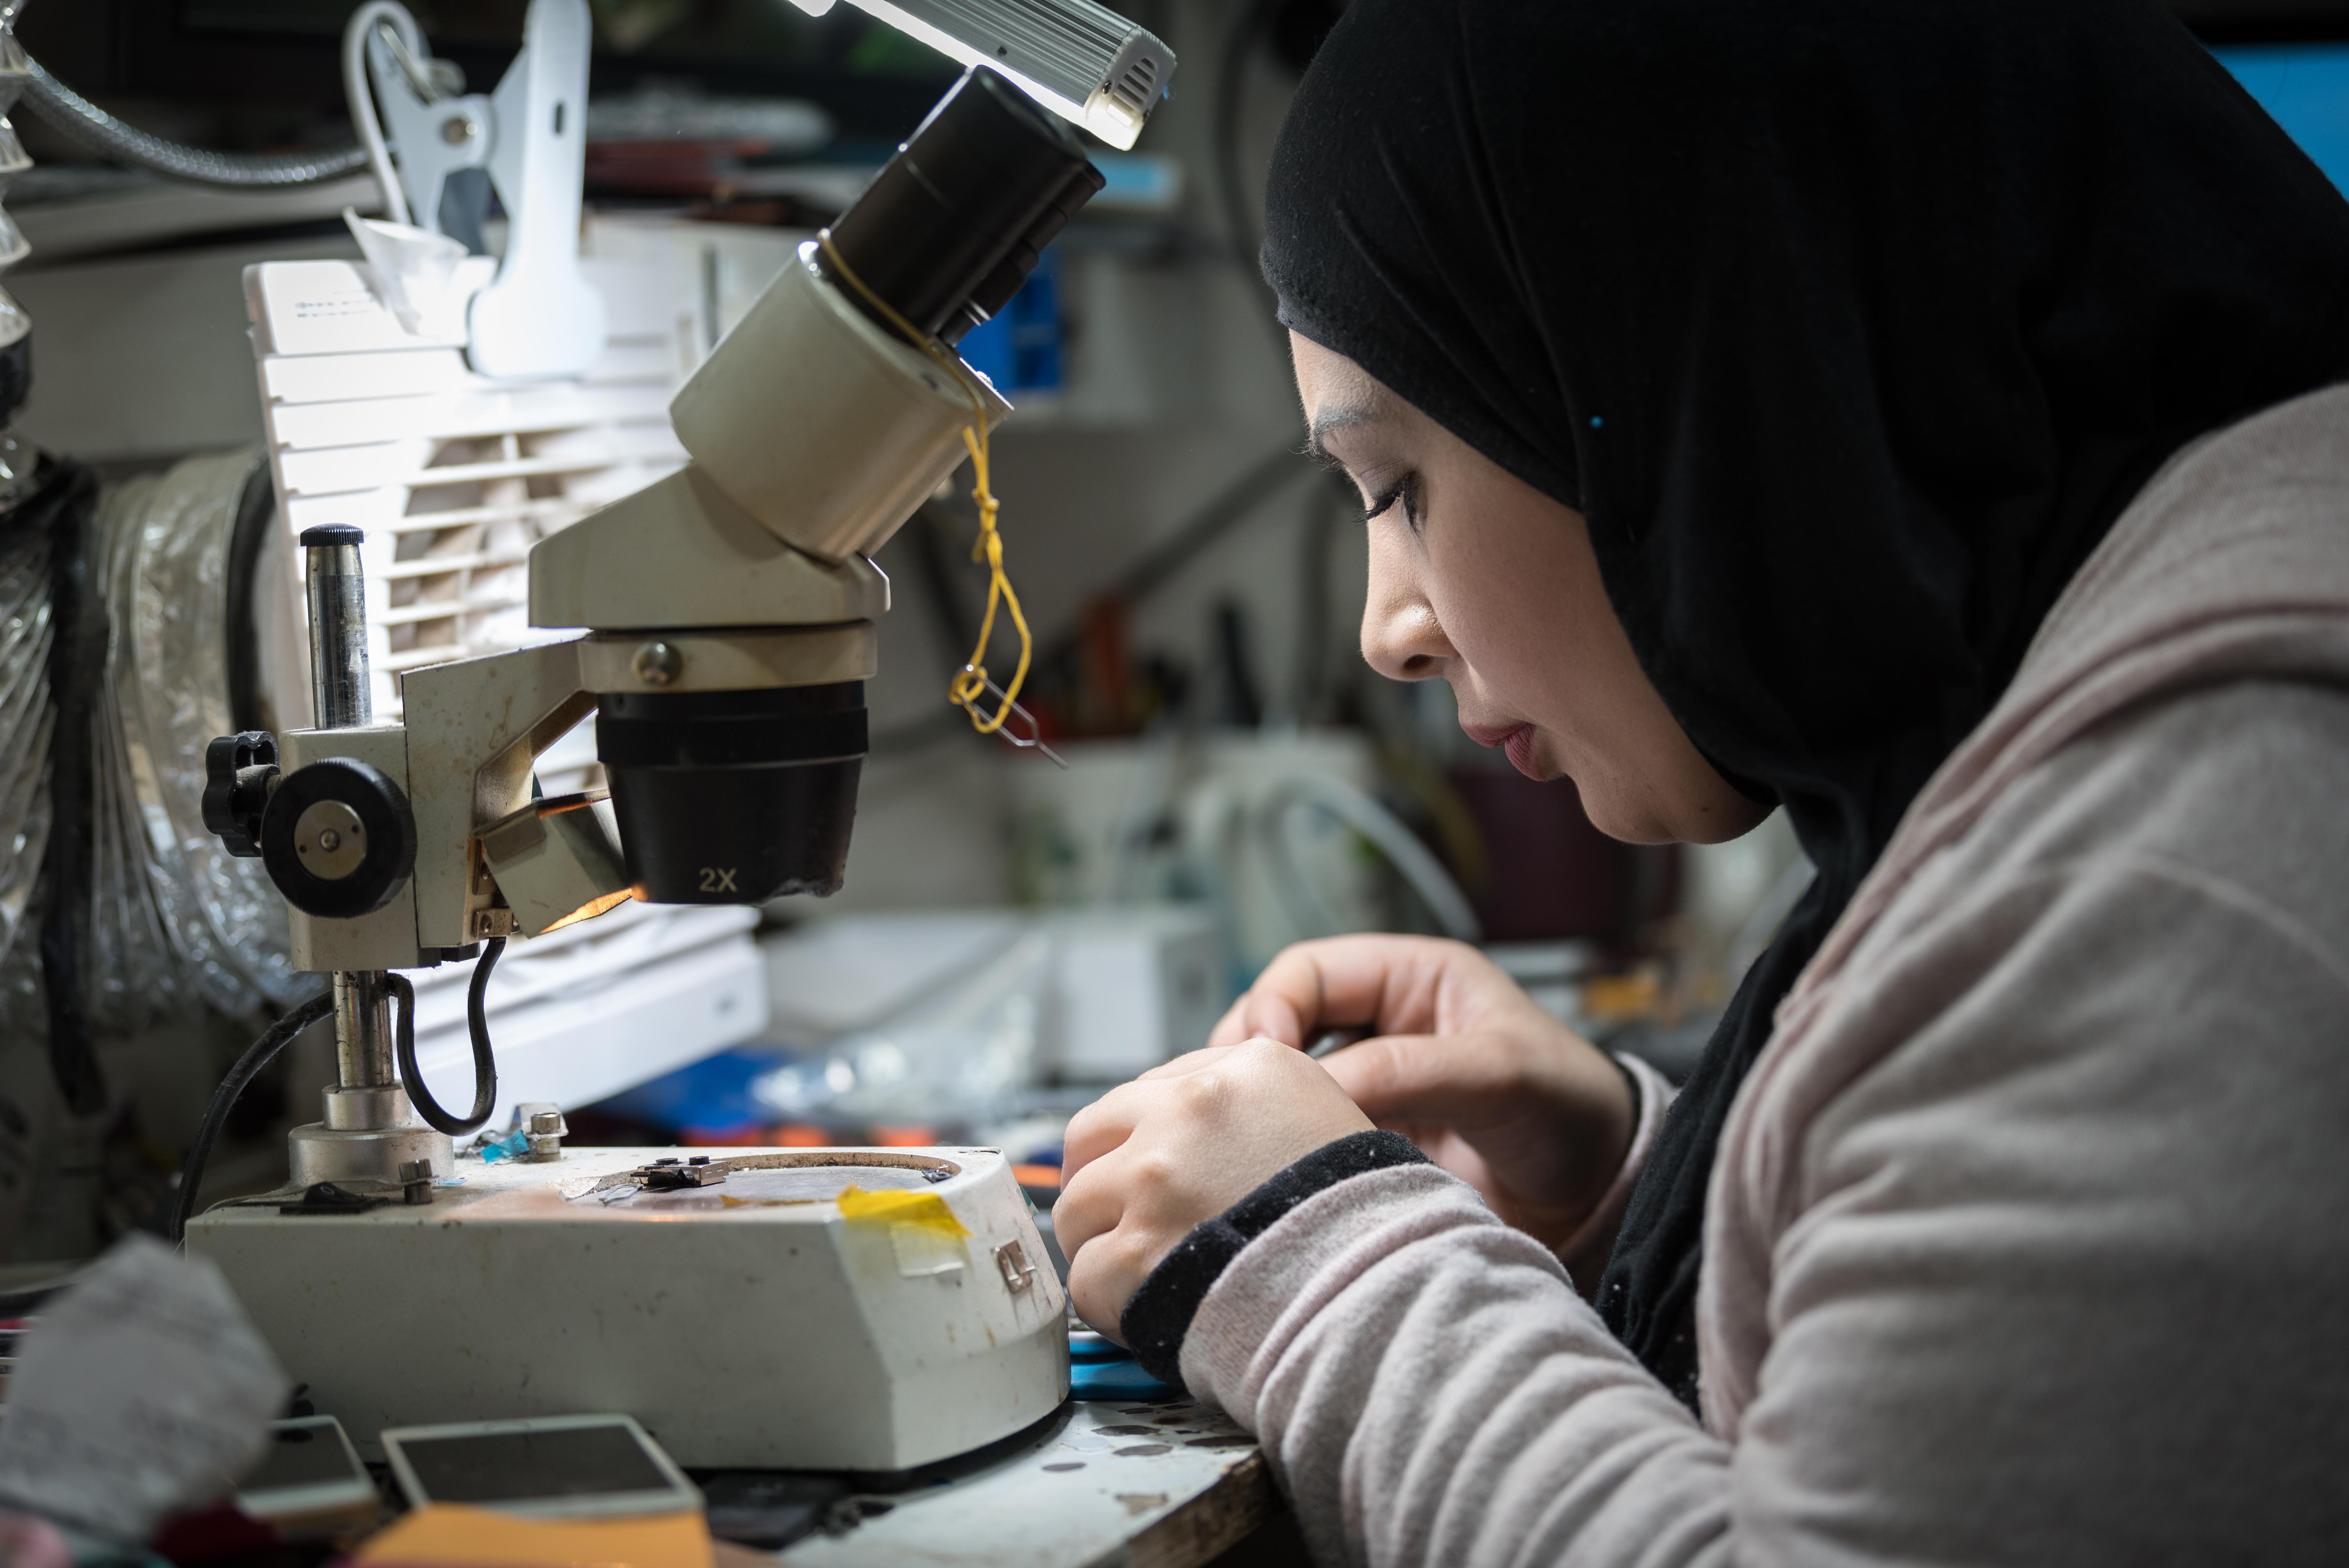 Die 29-jährige Jihad Albaba aus dem Flüchtlingslager Am‘ari stellt in einer kleinen Werkstatt in Ramallah die W-LAN-Funktion eines Mobiltelefons wieder her, nachdem sie ihr Studium im Fach Telekommunikation im Berufsausbildungszentrum des LWB im Ramallah erfolgreich abgeschlossen hat. Das GRIT-Projekt will die Zahl von palästinensischen Frauen in technischen und anderen traditionell weniger weiblich geprägten Berufen erhöhen, die in der Regel besser bezahlte Jobs anzubieten haben. Foto: LWB/Albin Hillert